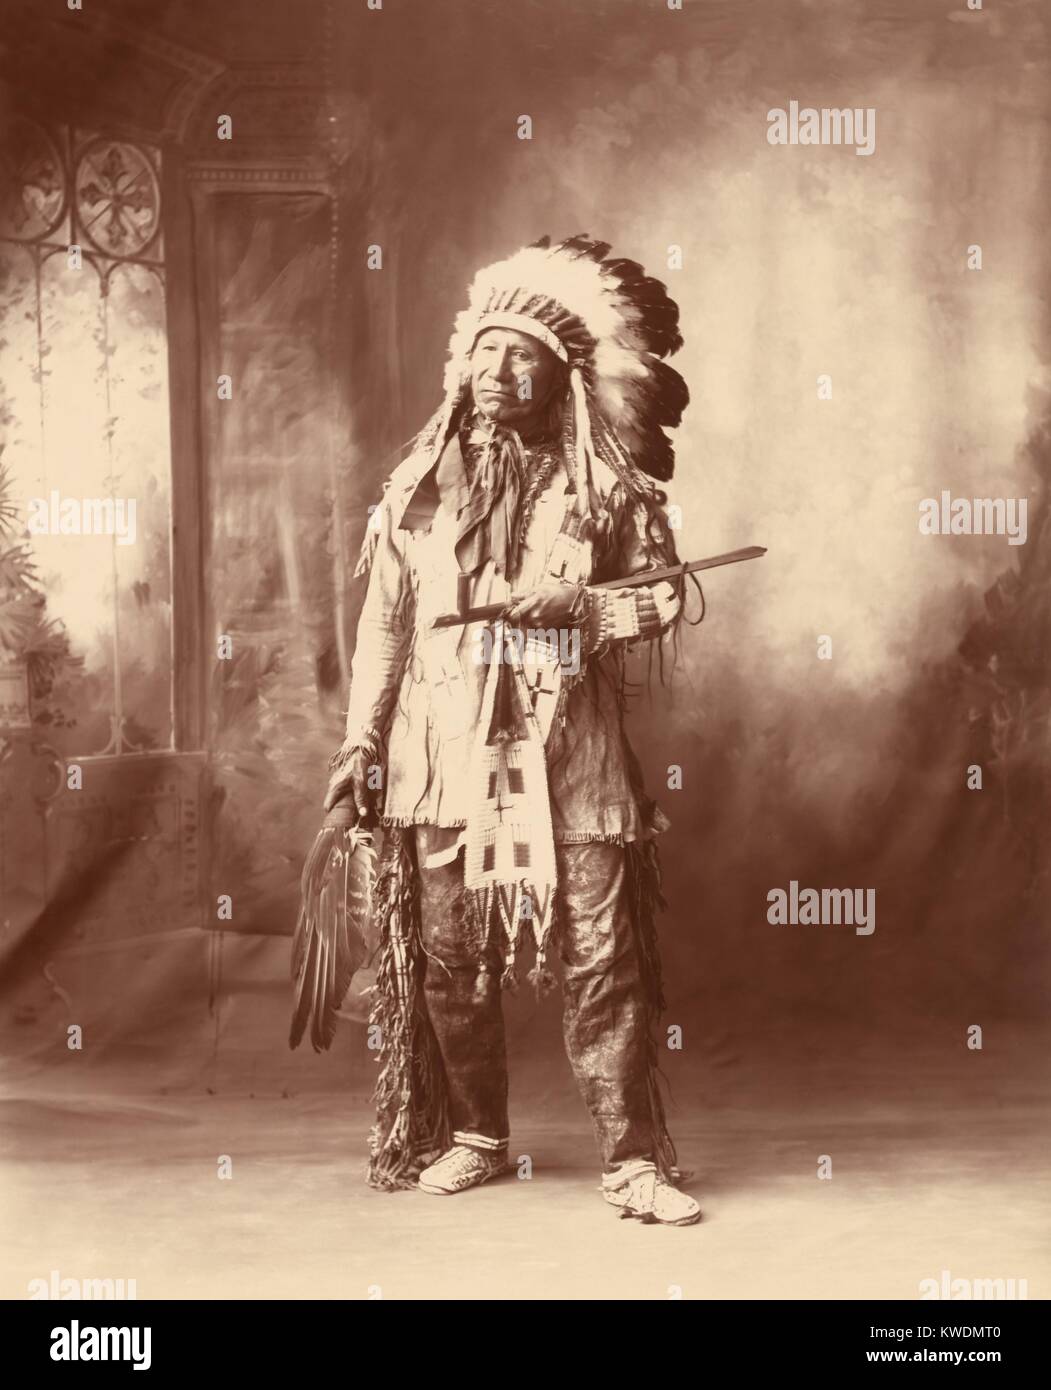 American Horse chef Oglala Lakota, division d'un progressiste, Native American. Il était un Scout pour l'armée américaine, s'est opposé à la Grande Guerre de 1876-1877 Sioux, ainsi que le mouvement de la danse de Ghost 1890. Il a signé le Traité de vente de terres de 1889 et a envoyé son fils à l'école indienne de Carlisle. 1898 Photo de Frank A. Rinehart (BSLOC   2017 18 48) Banque D'Images